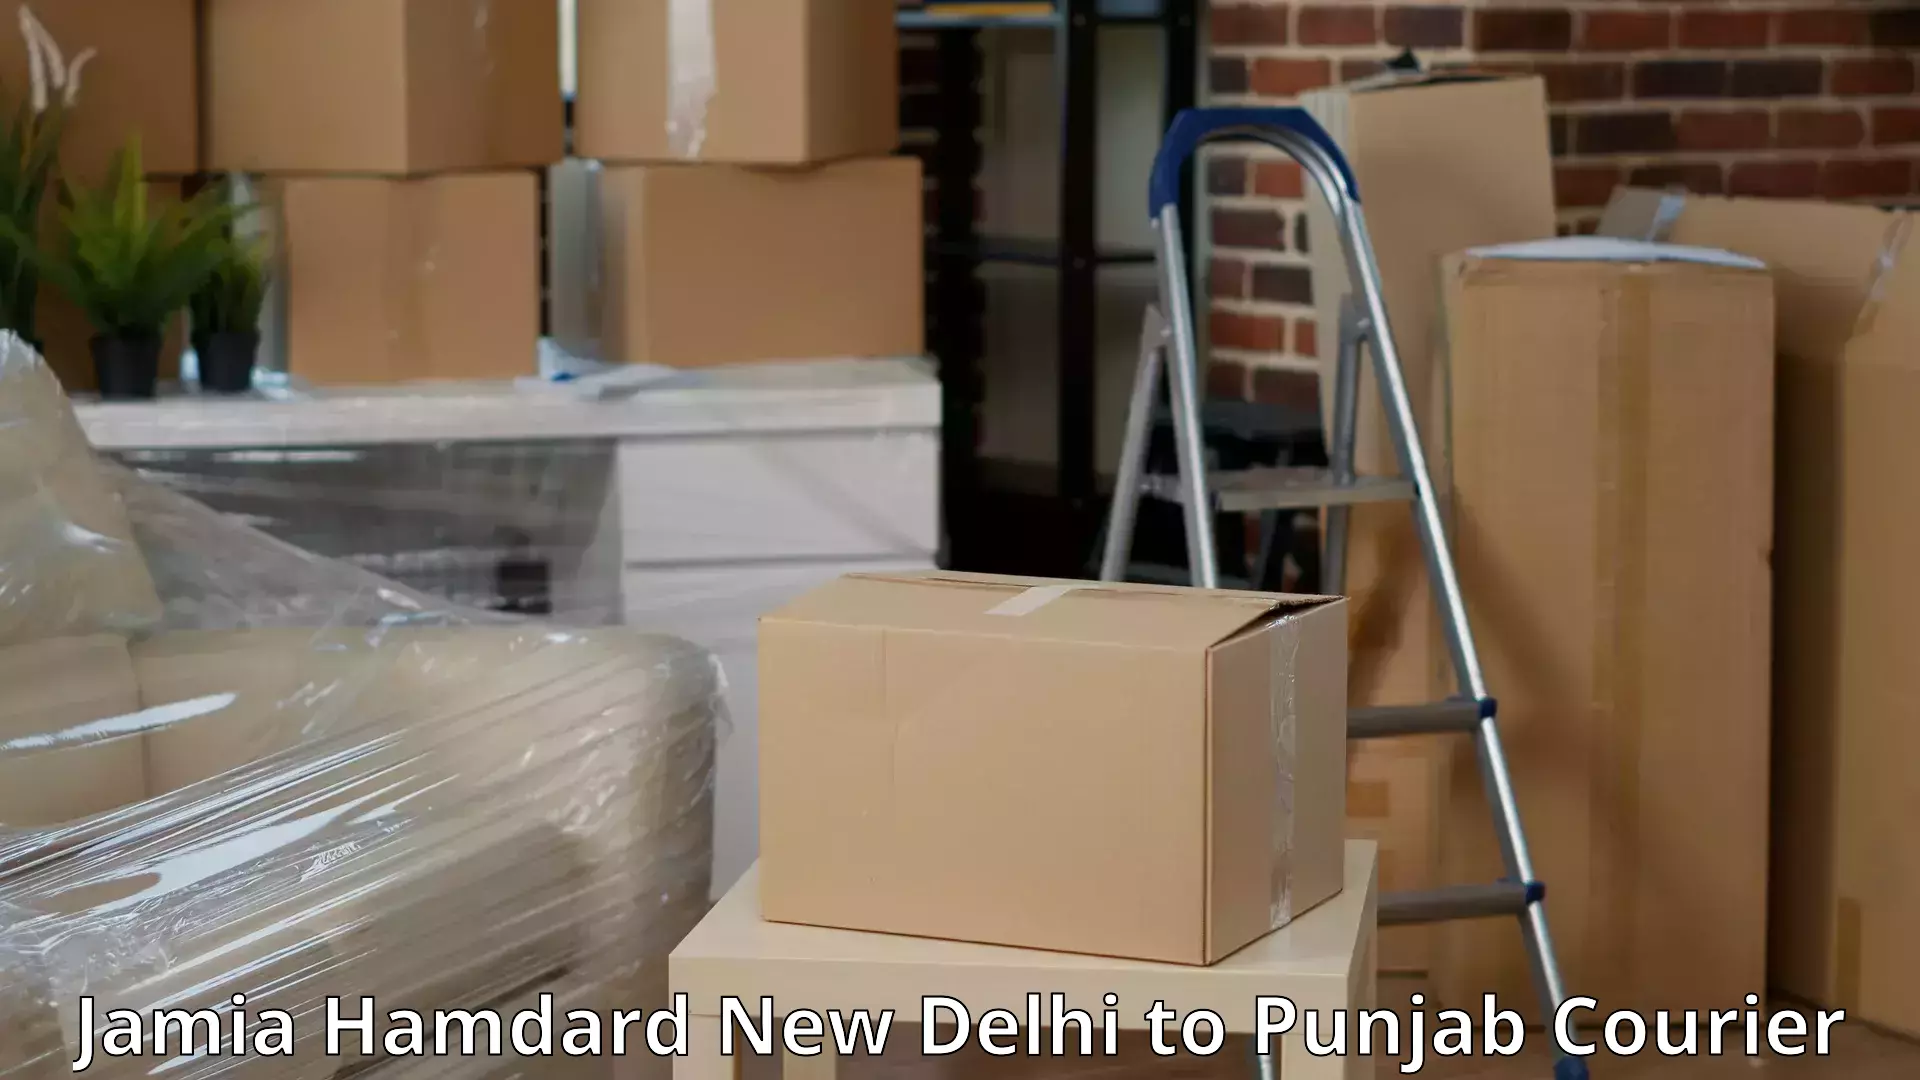 Quality furniture transport Jamia Hamdard New Delhi to Punjab